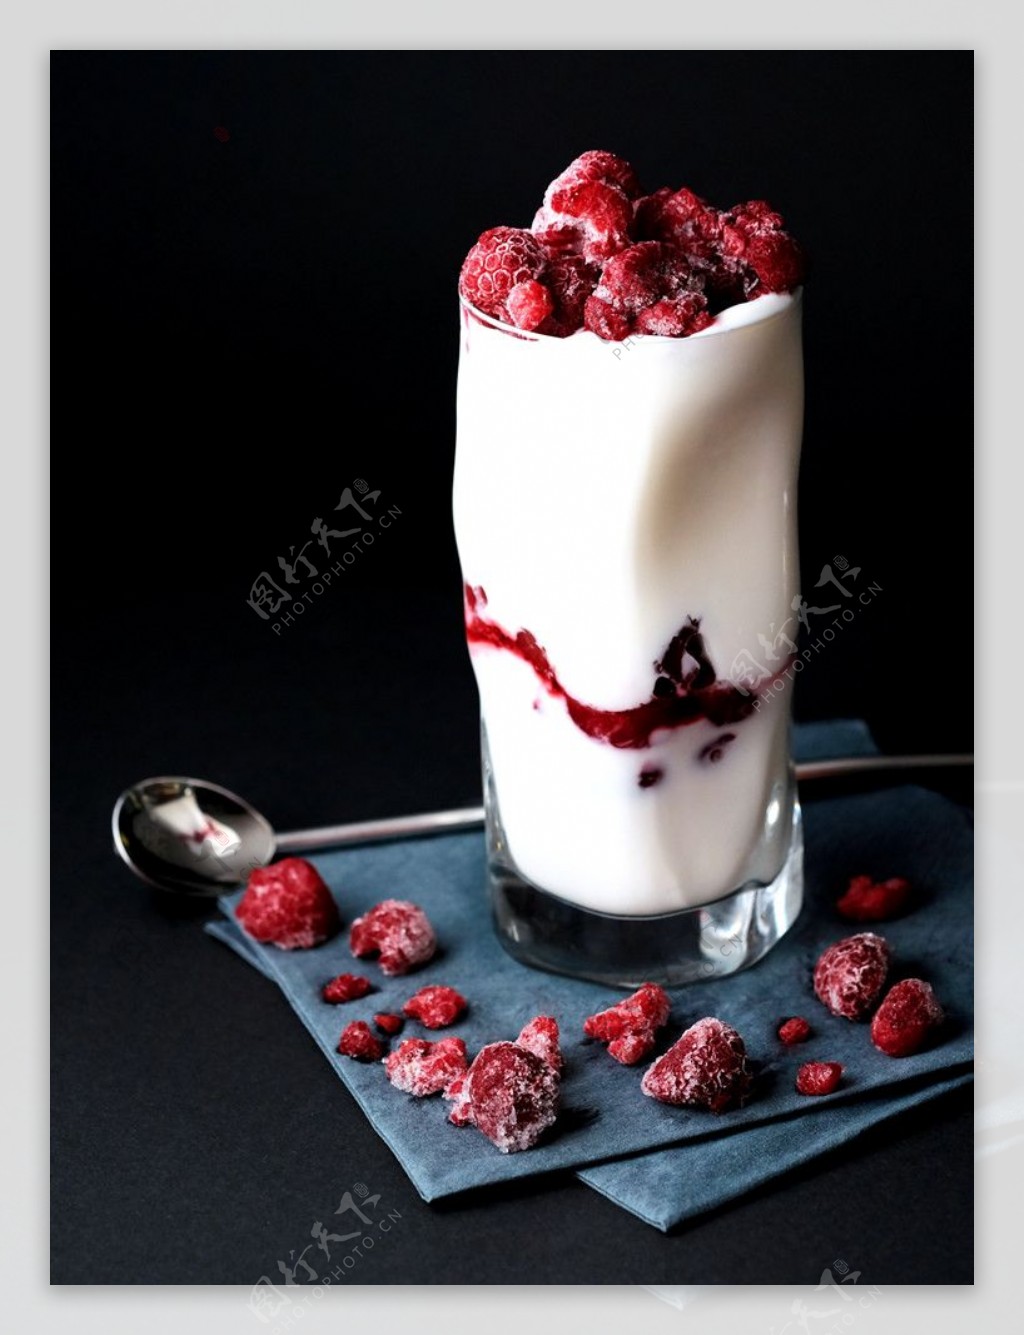 甜品树莓酸奶